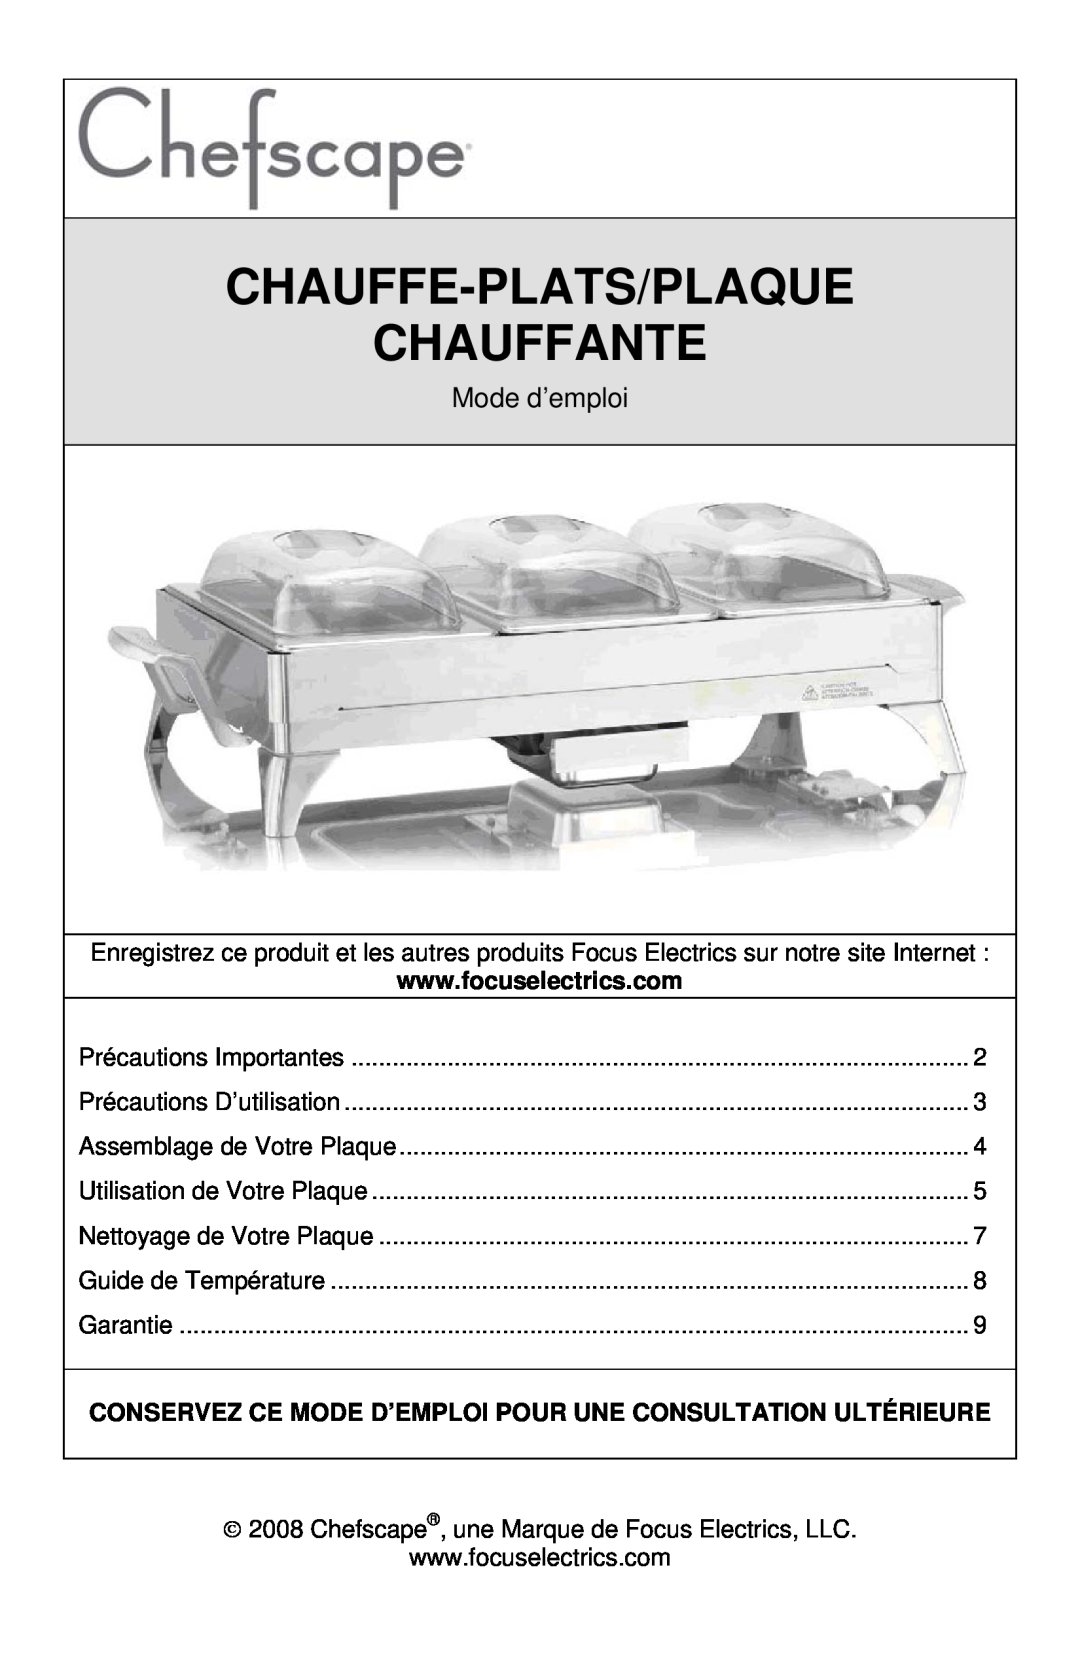 West Bend L5745A instruction manual Chauffe-Plats/Plaque Chauffante, Mode d’emploi 